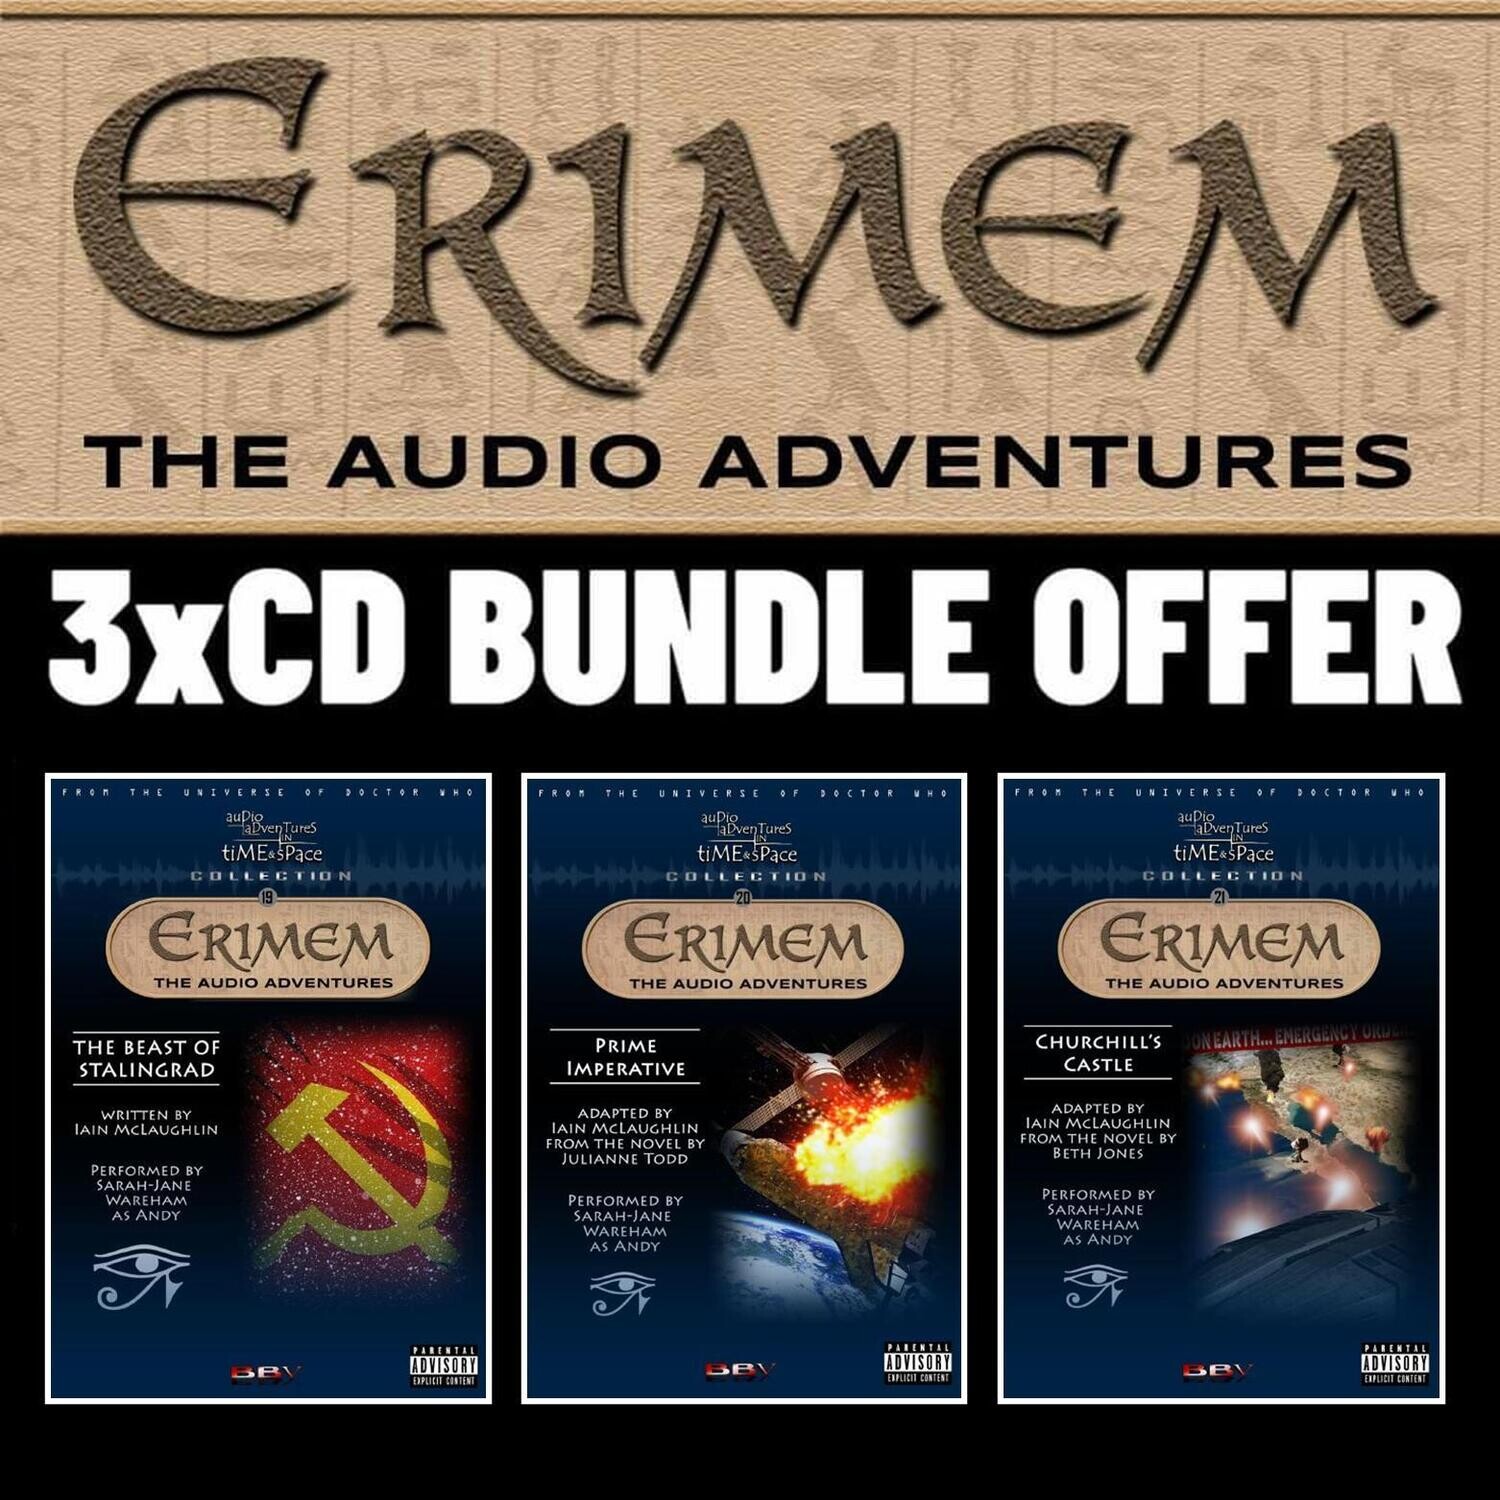 Erimem 3 CD-R Bundle NON UK ONLY - IN DVD CASES (Pre-order)